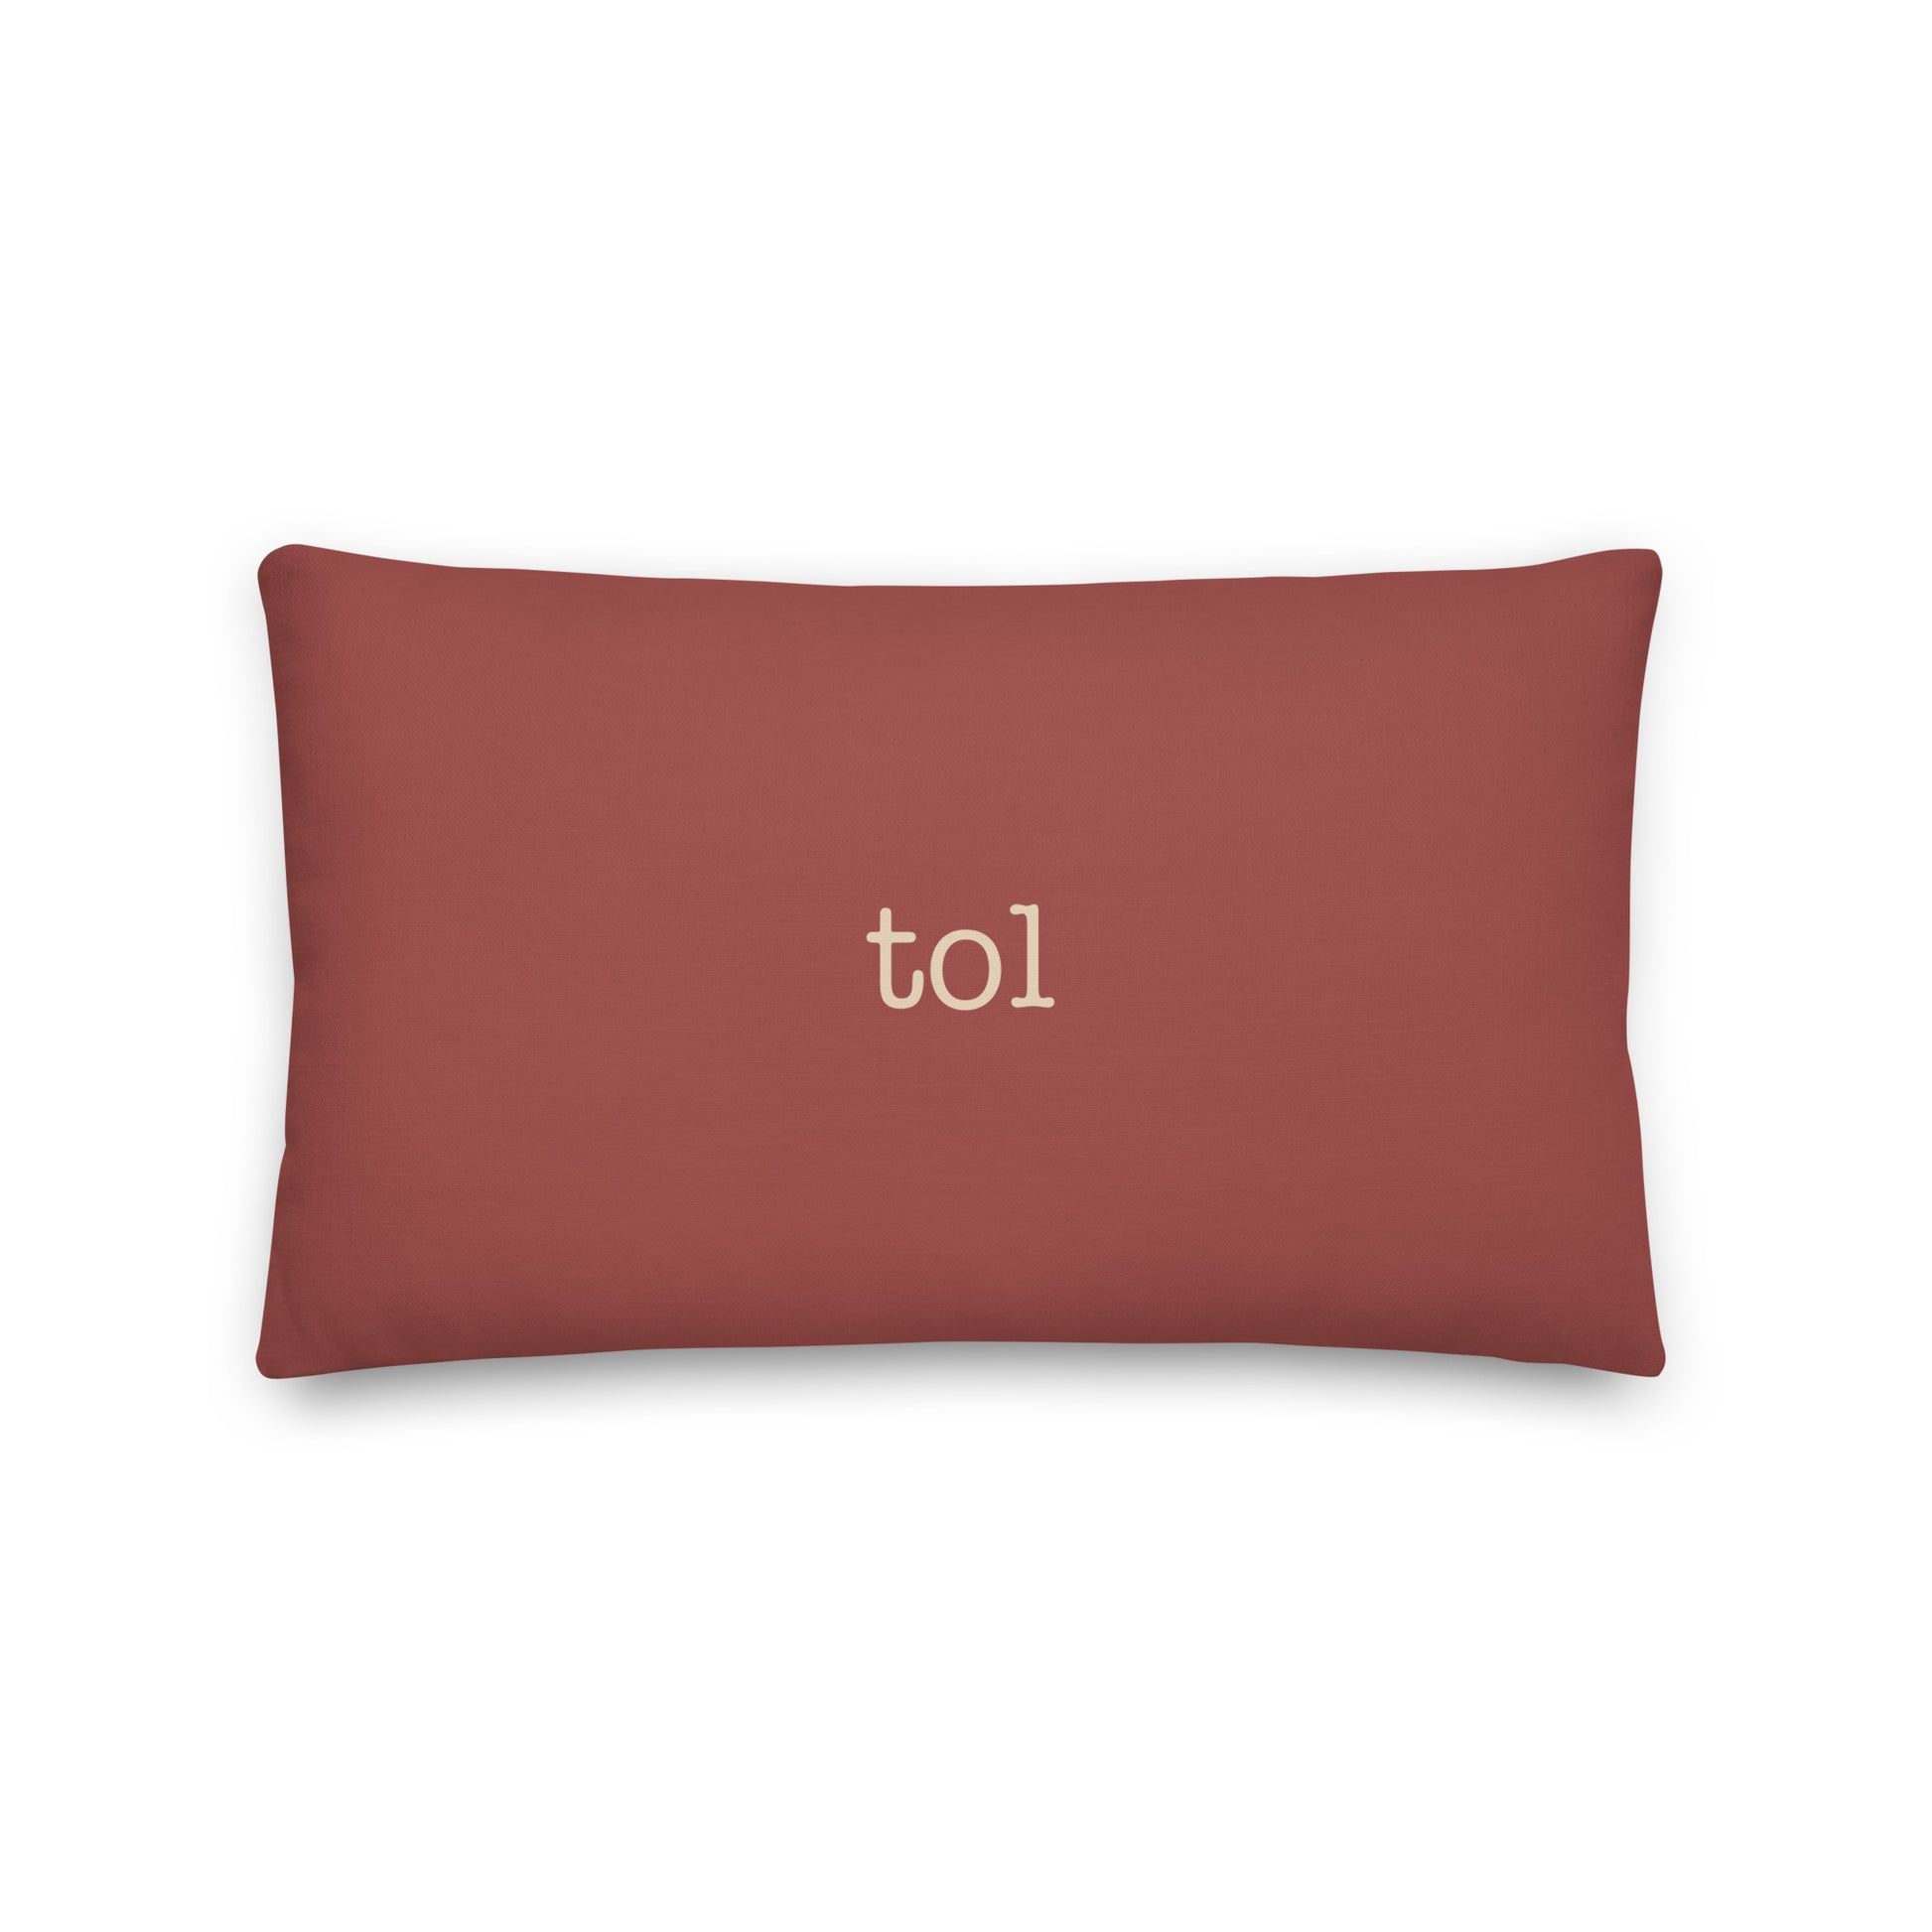 Typewriter Pillow - Terra Cotta • TOL Toledo • YHM Designs - Image 02